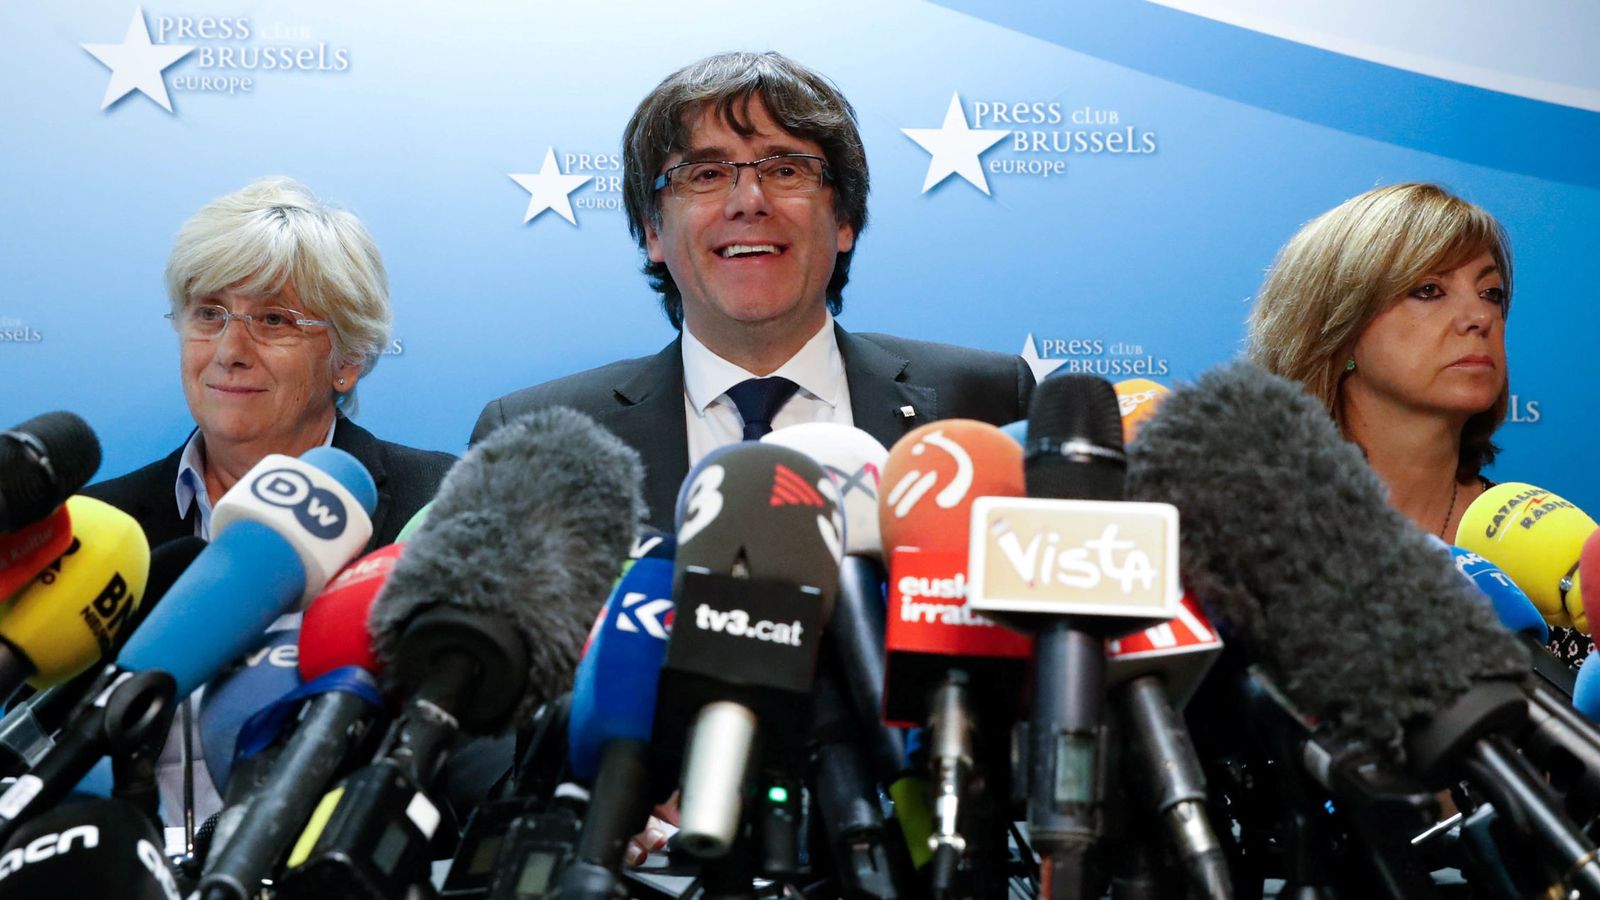 Foto: Carles Puigdemont, durante su comparecencia en el Press Club Brussels. (Reuters)